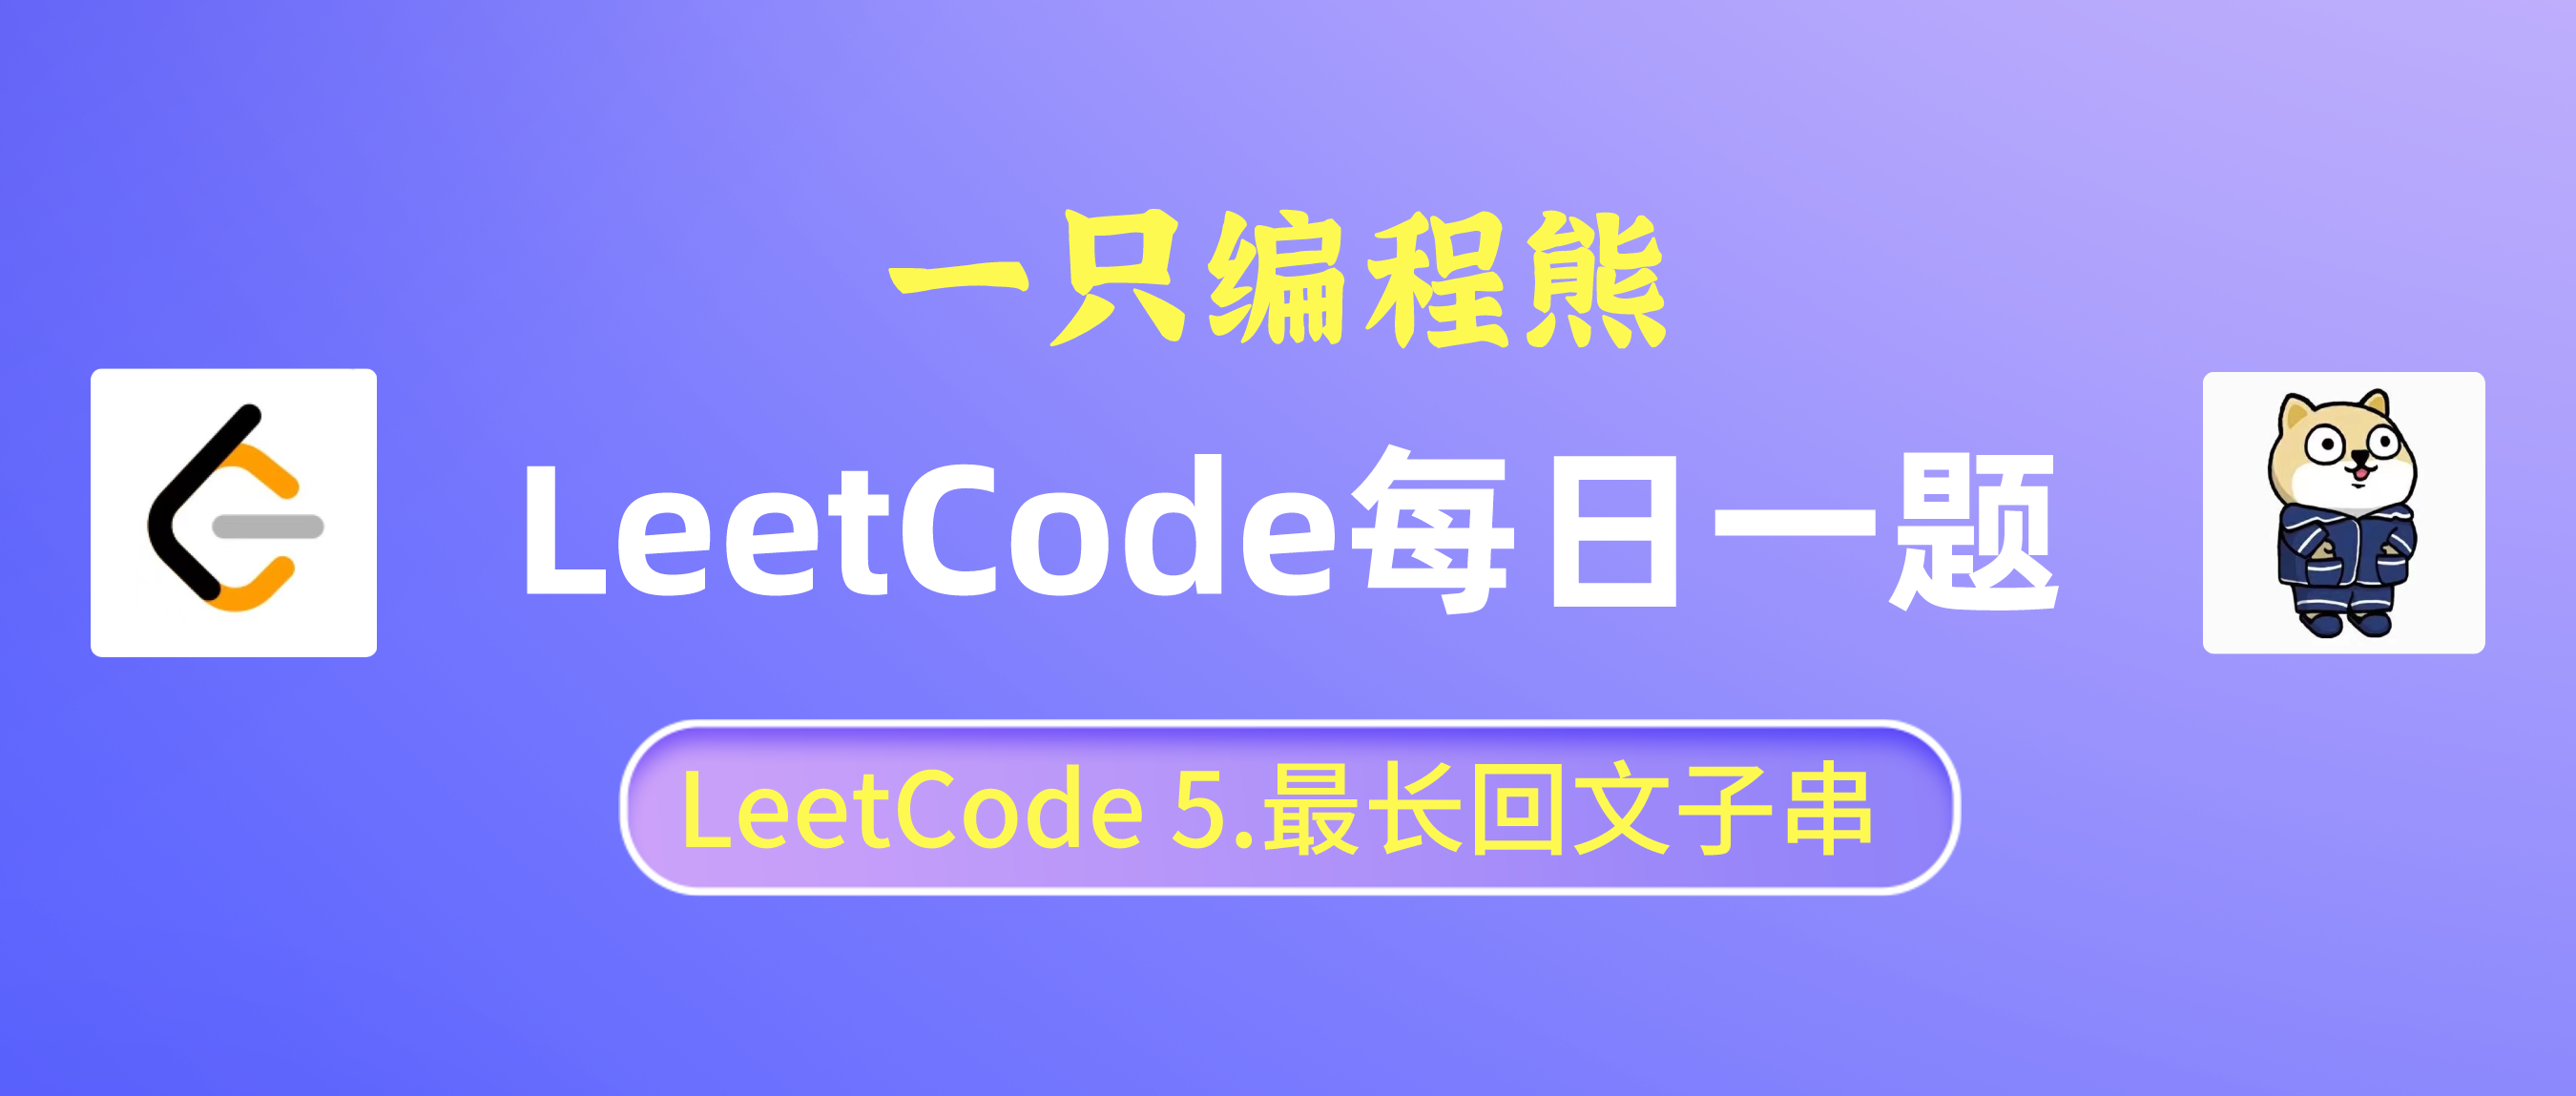 【LeetCode每日一题 Day 5】5. 最长回文子串